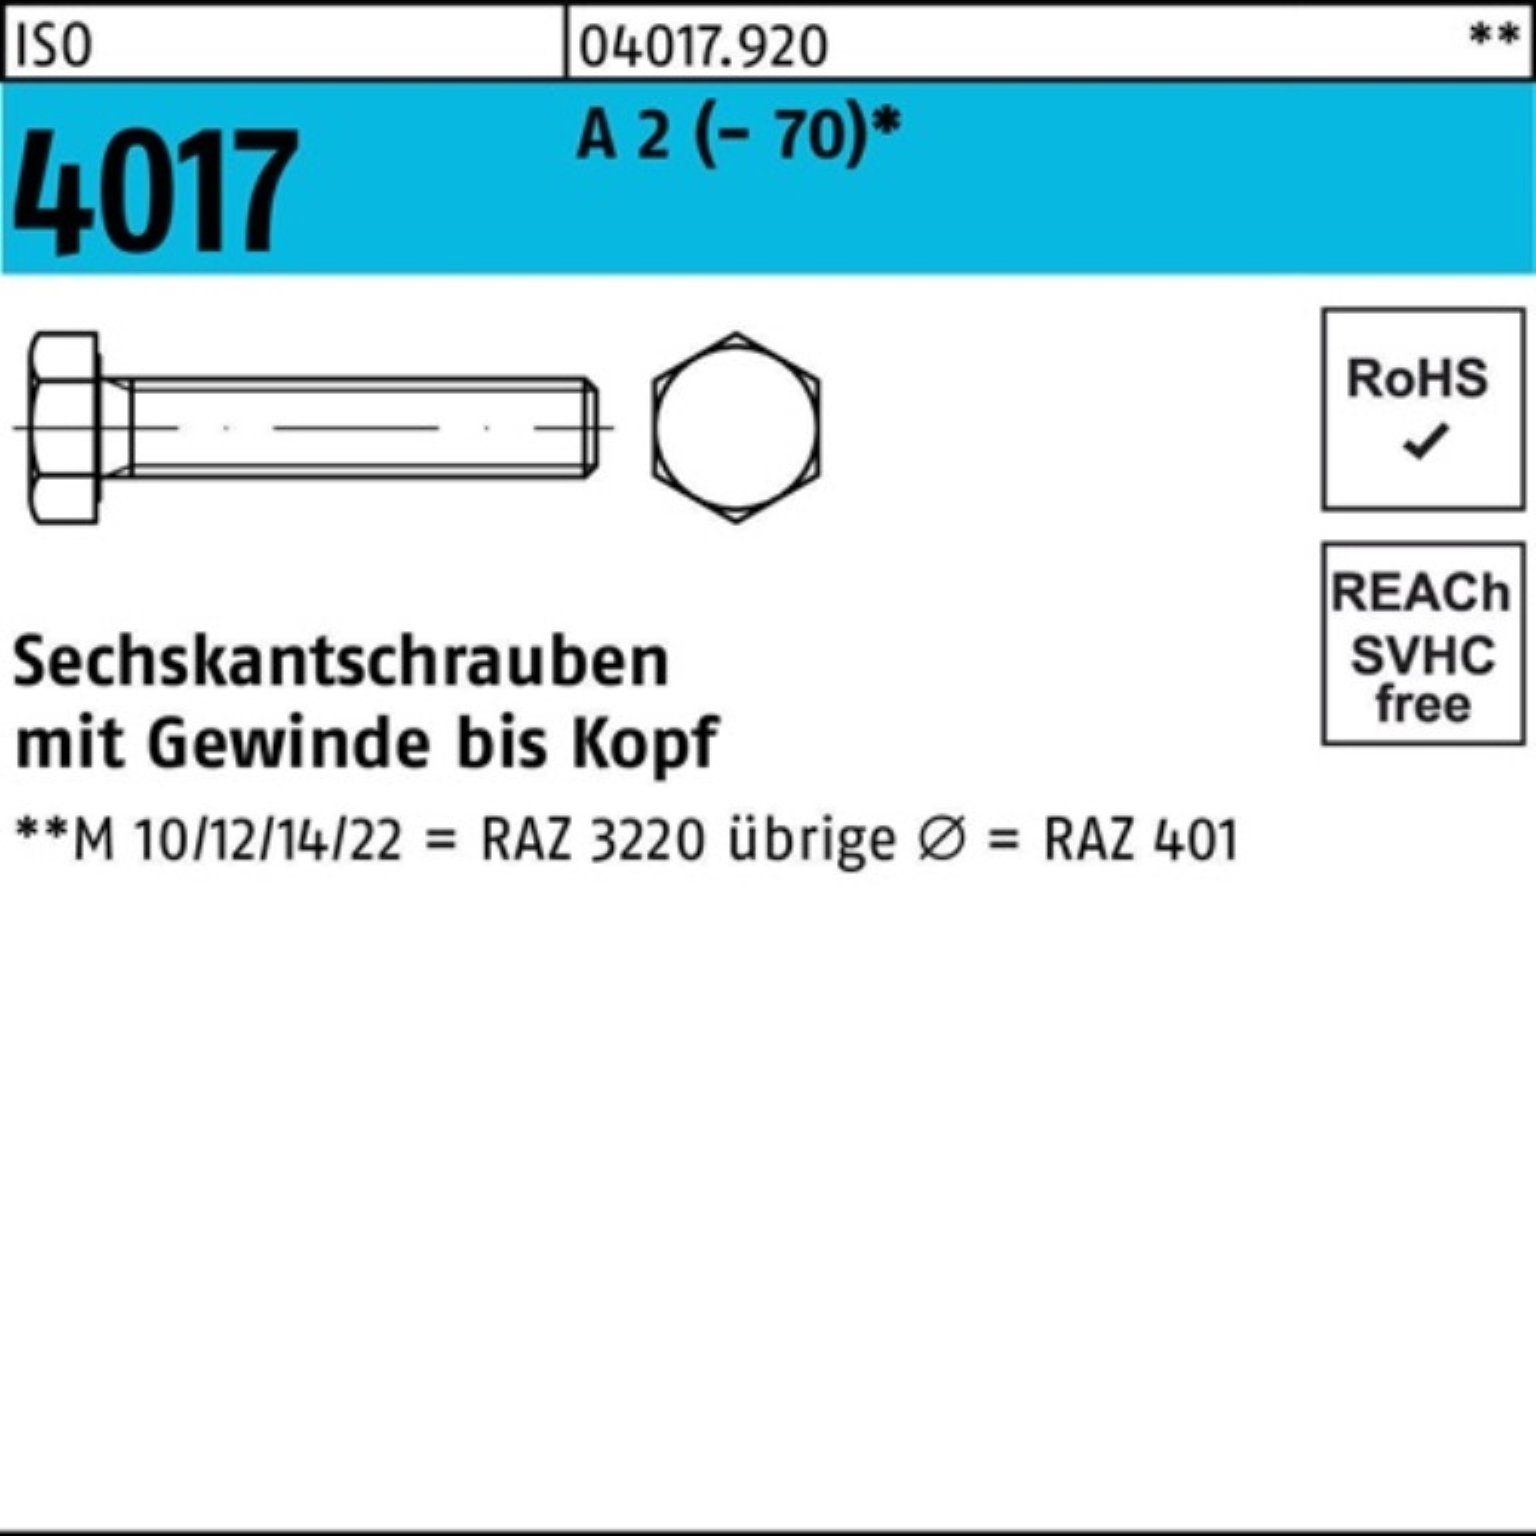 Jetzt versandkostenfrei! Bufab Sechskantschraube 200er Pack Sechskantschraube Stück 40 (70) 200 A M8x 2 4017 ISO VG